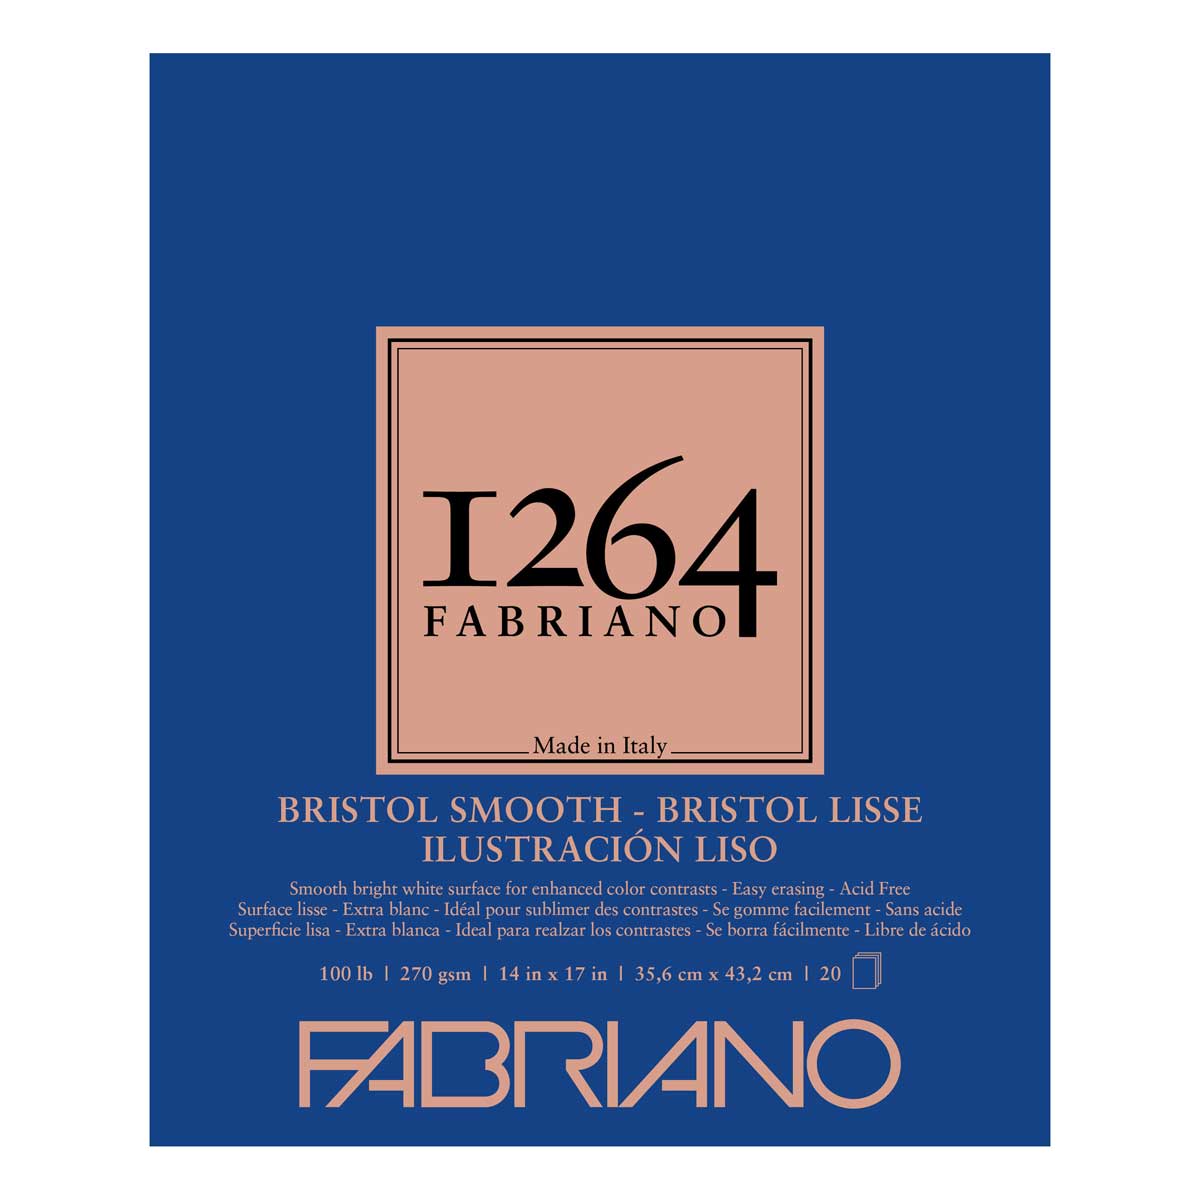 Fabriano 1264 Bristol Smooth Pad 14" X 17" 20 Sheets